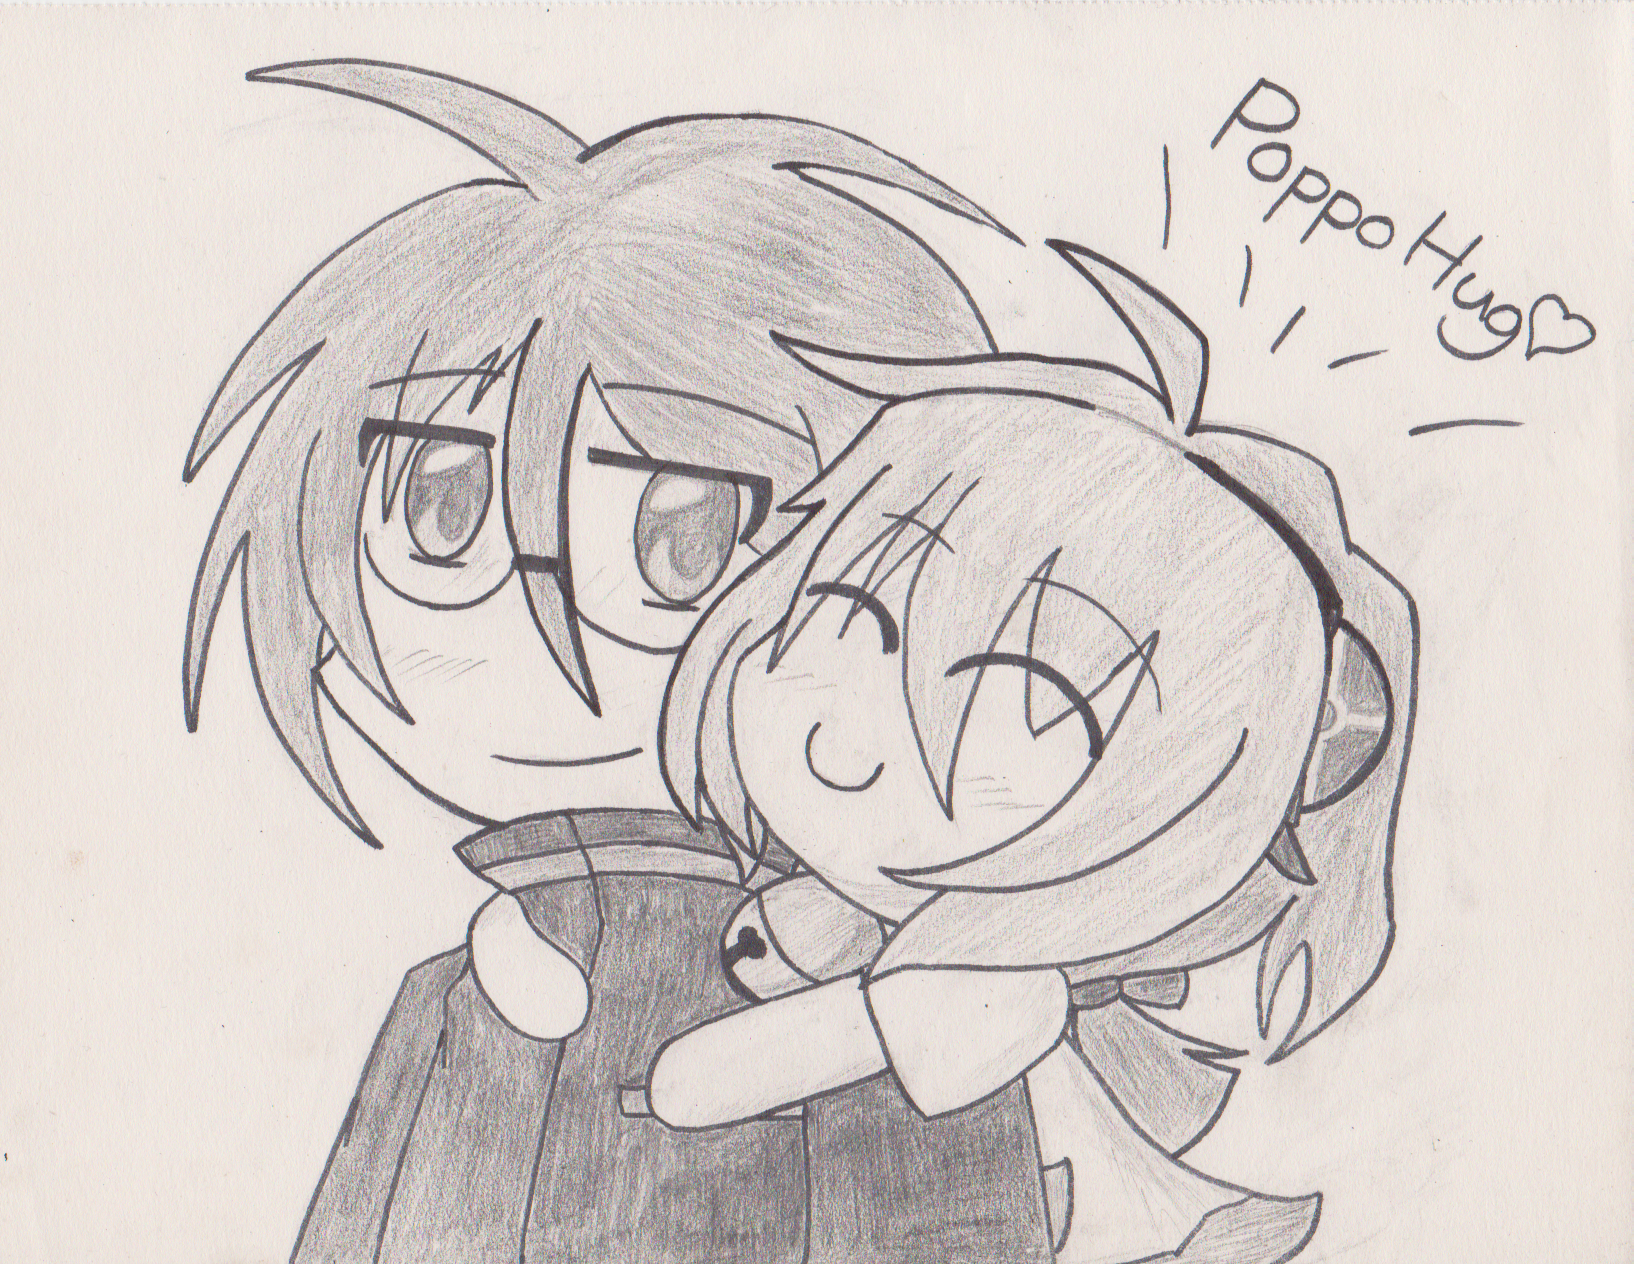 #12 "Kai and Poppo BFF" by Zero Eiyuu